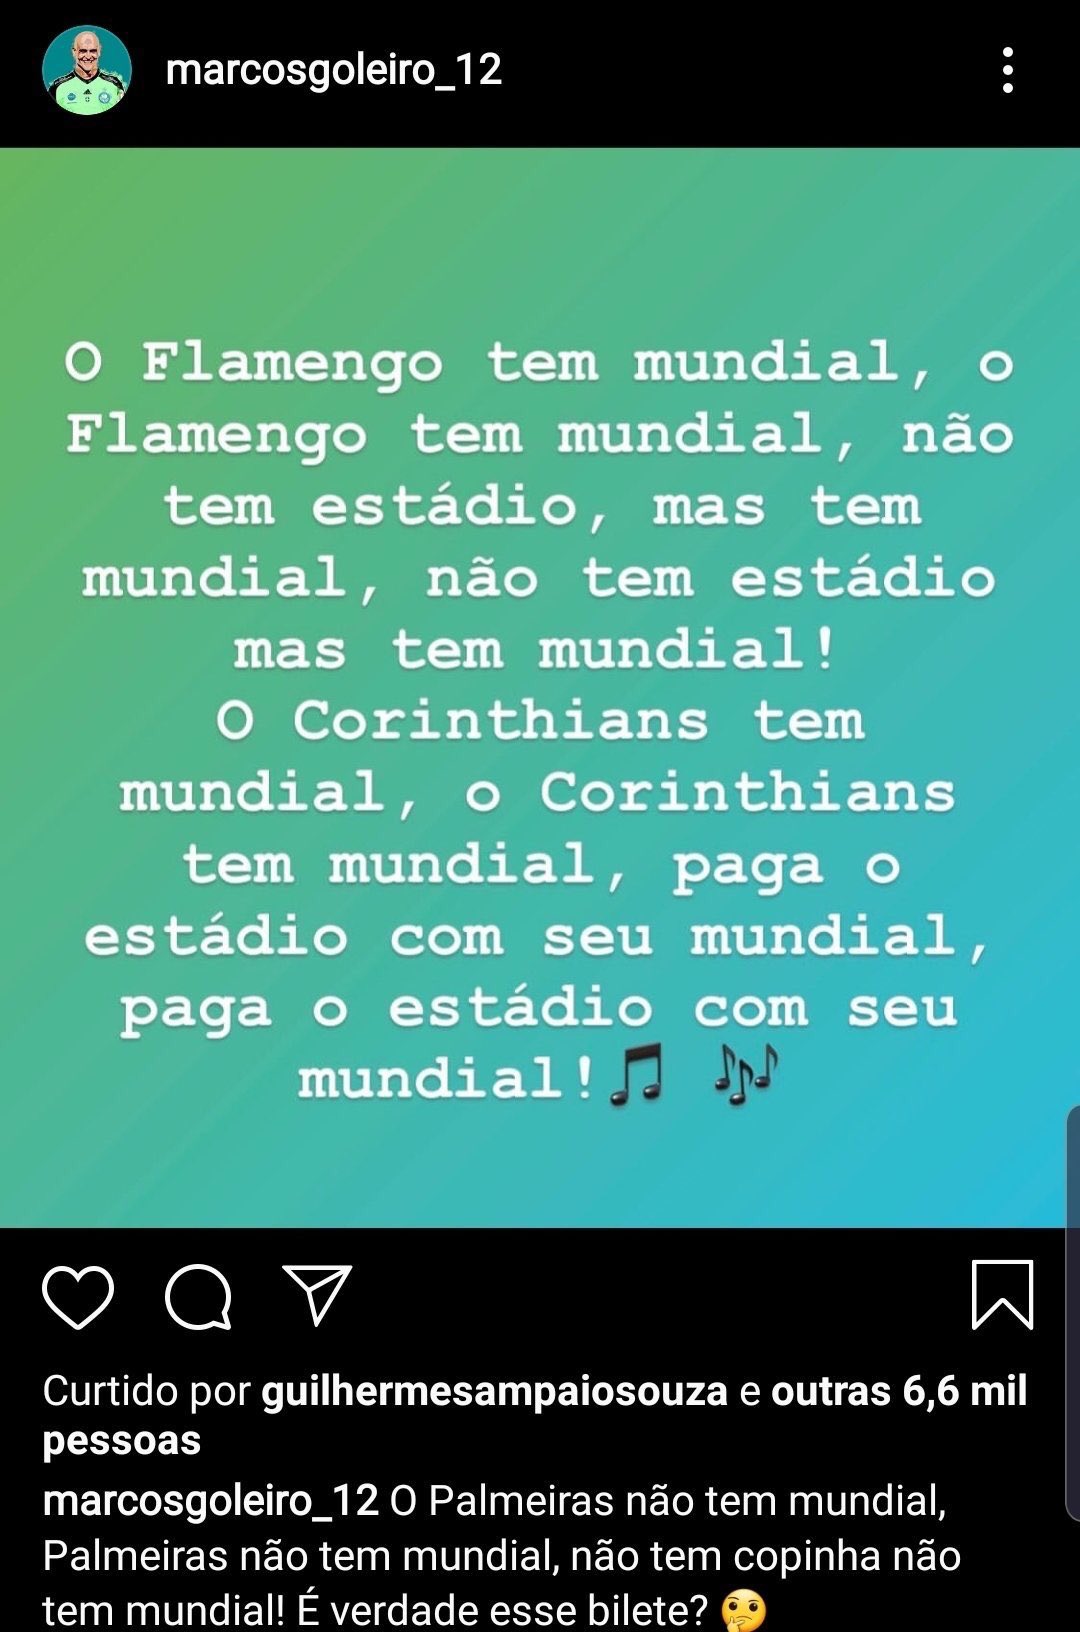 Rafael Sidrim on X: Flamengo não tem estádio mas jogou todos seus jogos no  Maracanã enquanto a porcada vai ter que jogar no Brinco de Ouro da Princesa  pq vai ter evento